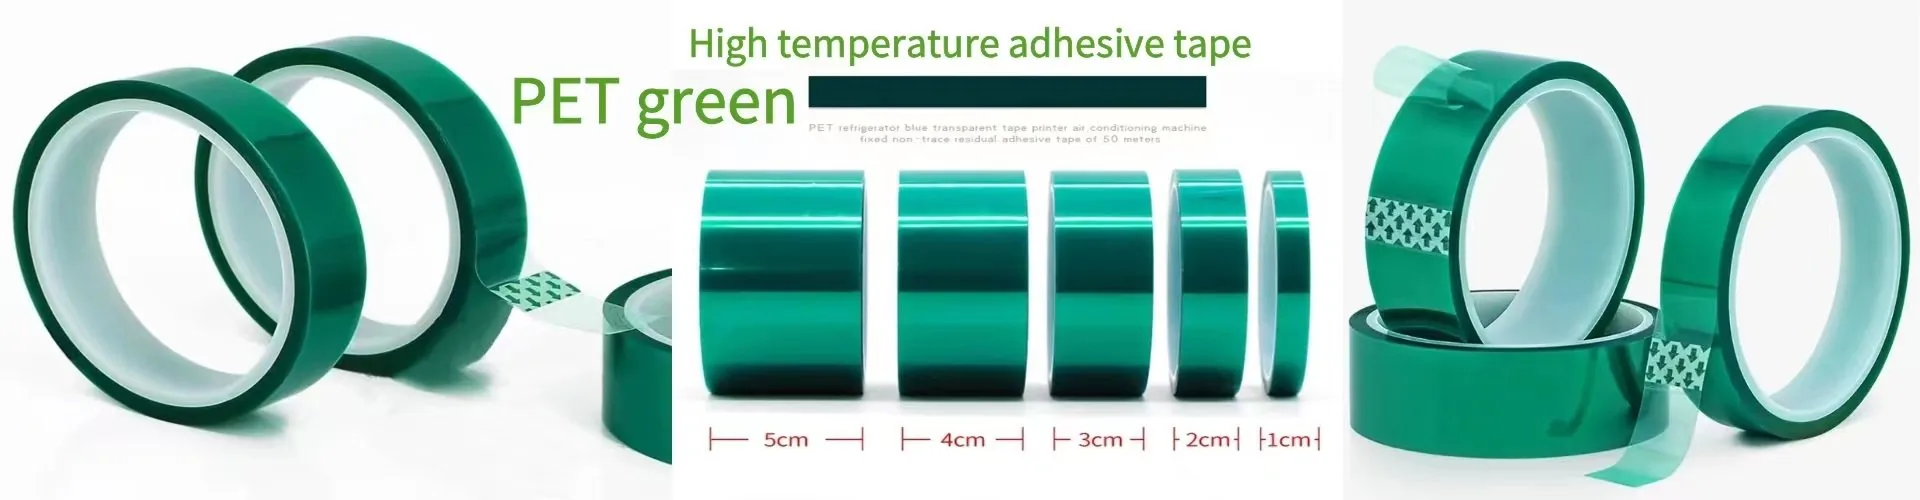 High temperature tape